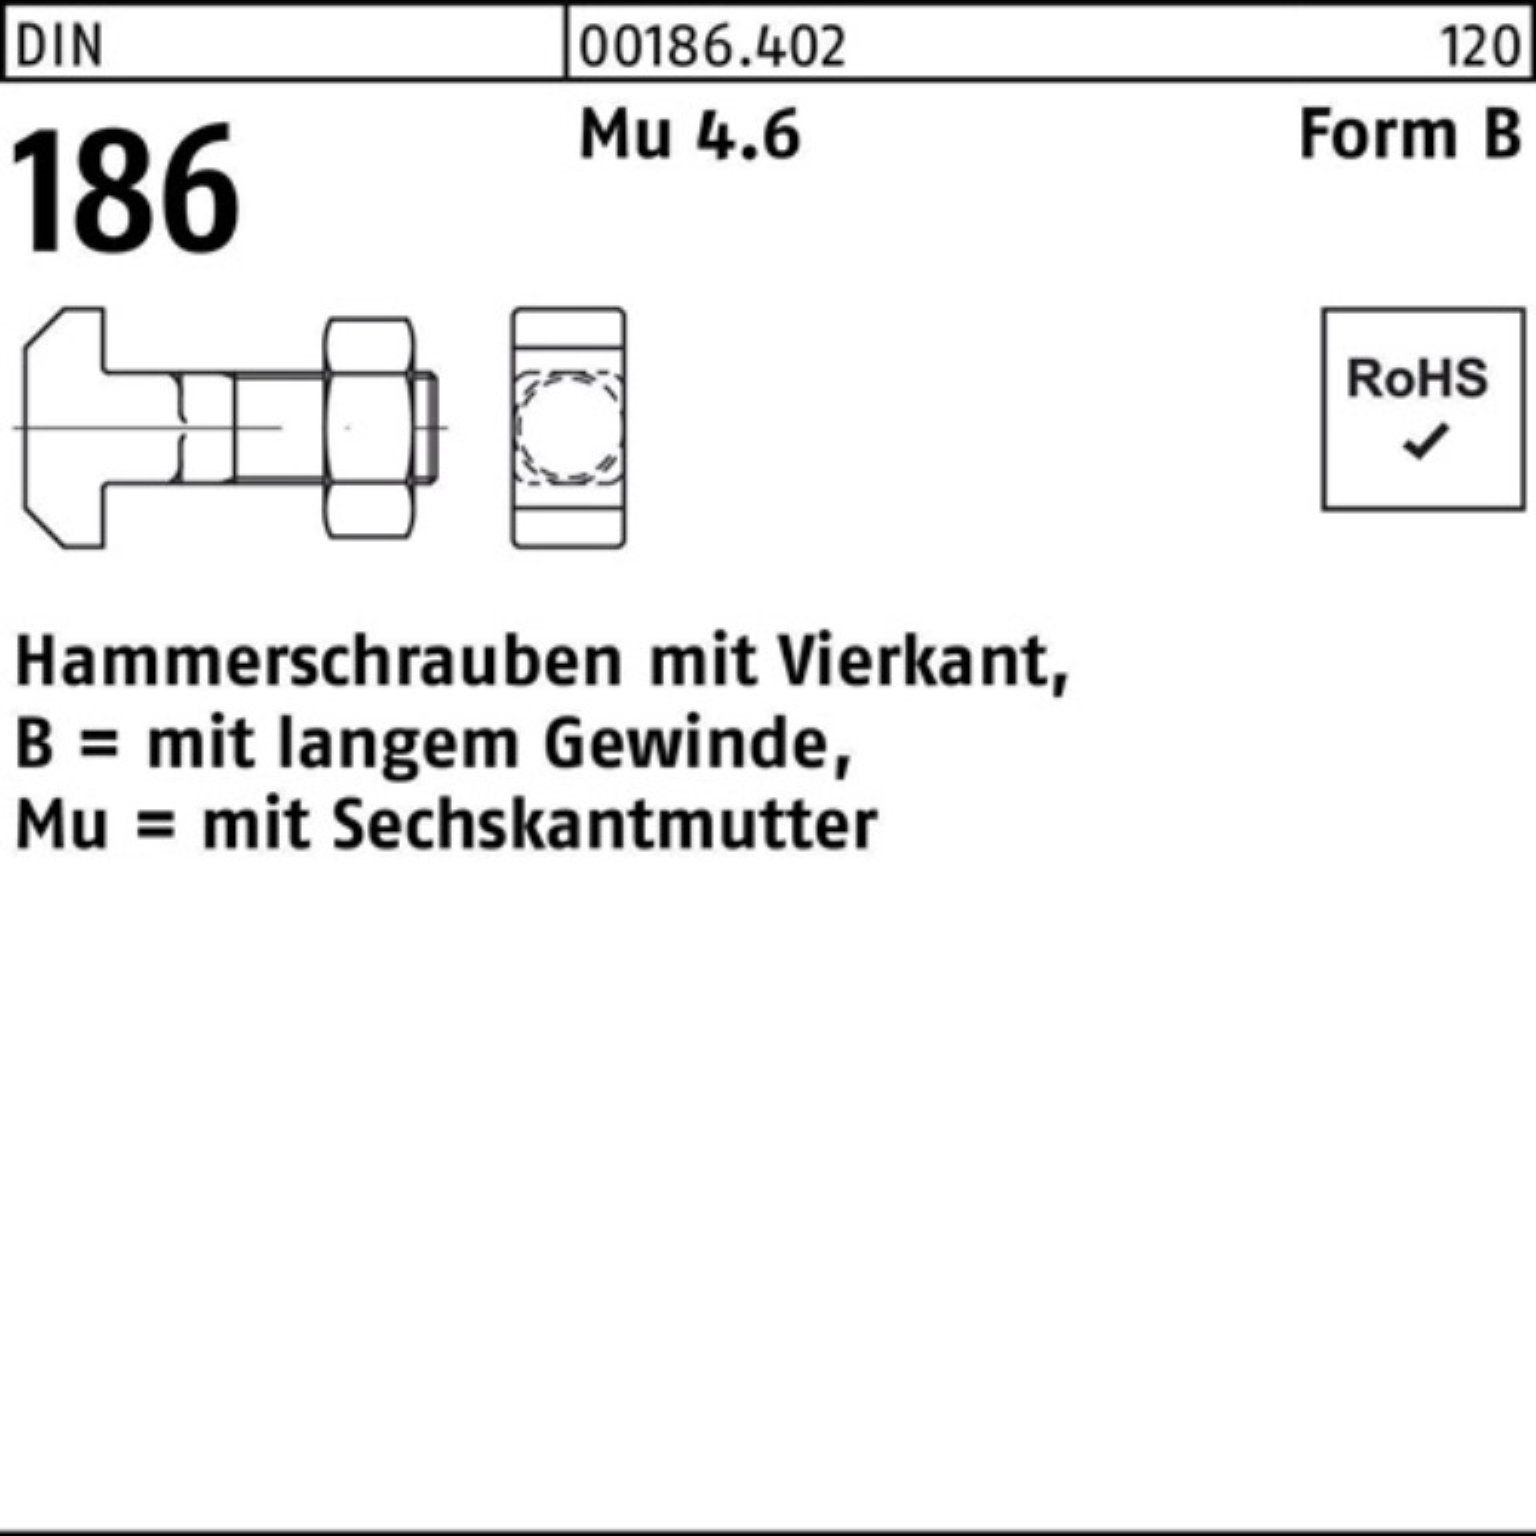 Schraube Vierkant 16x BM DIN Pack 120 Hammerschraube 186 100er 6-ktmutter Reyher FormB